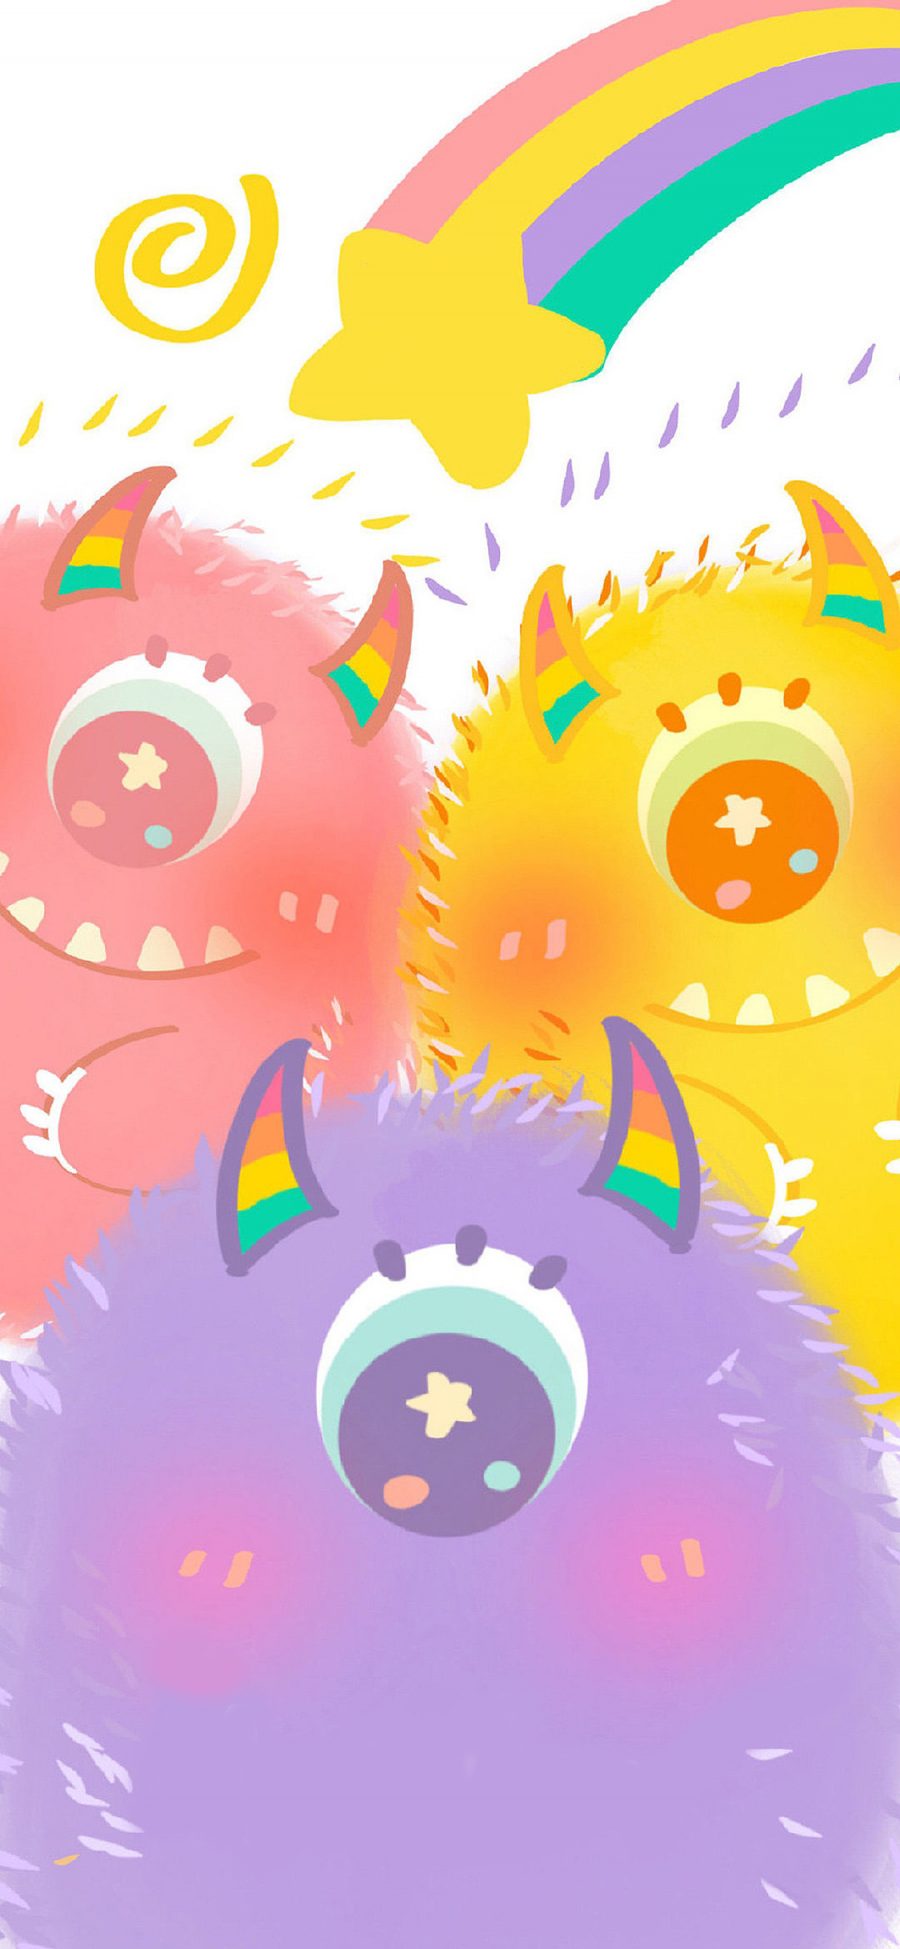 [2436×1125]可爱 色彩 可爱 小怪兽 苹果手机动漫壁纸图片